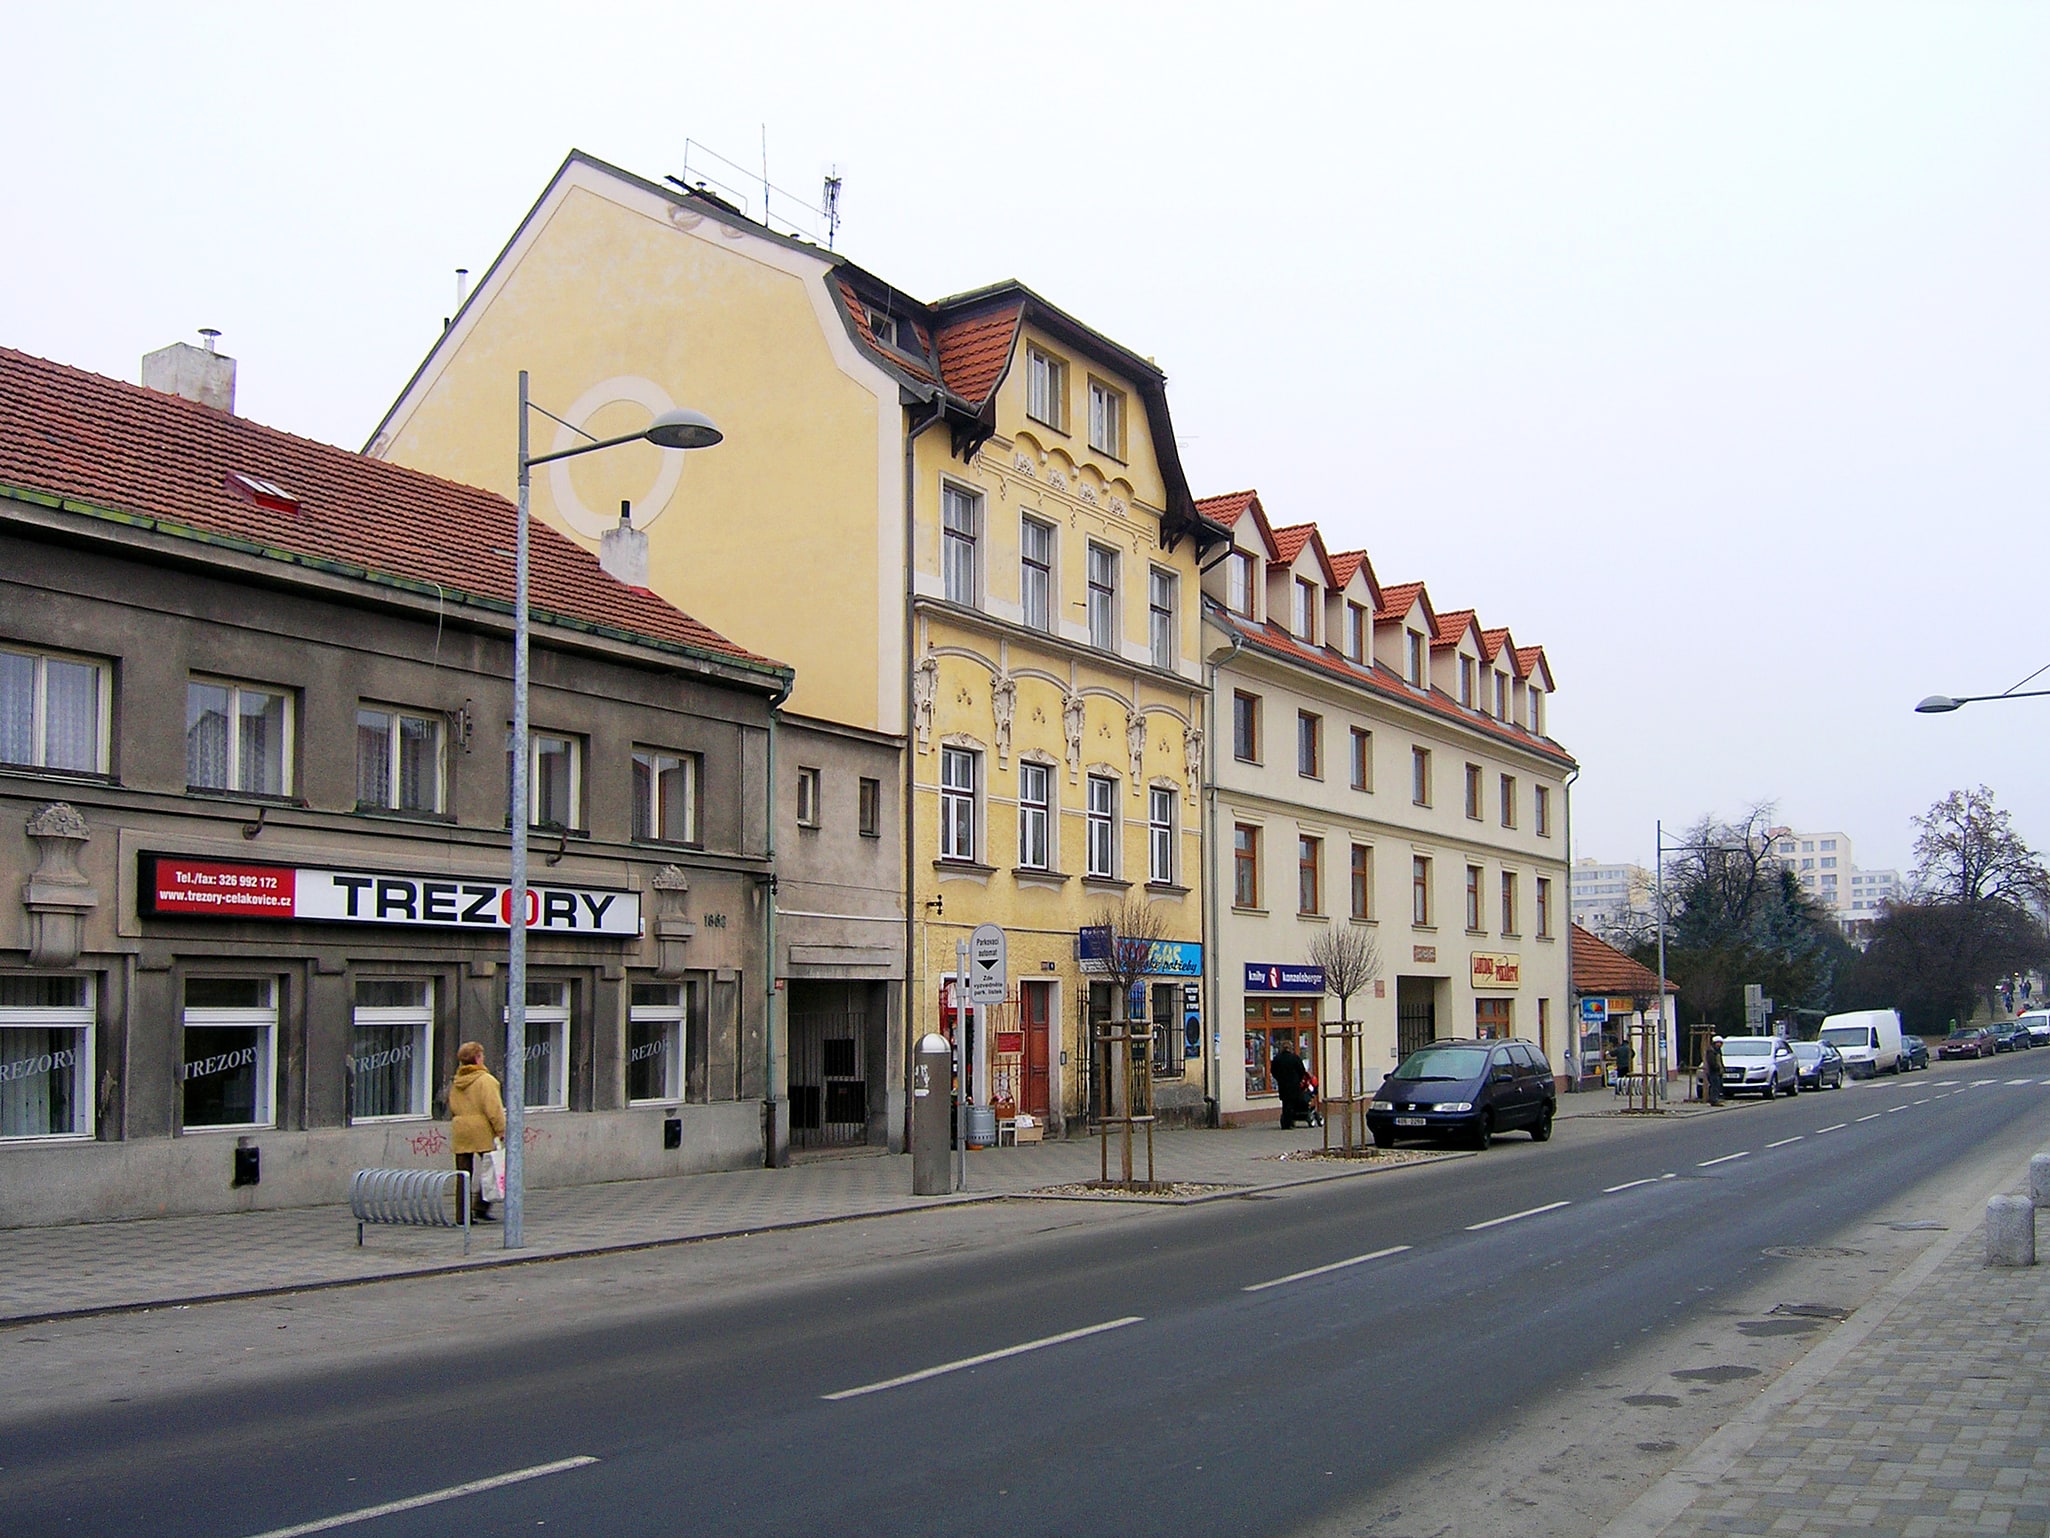 Čelákovice, Czech Republic